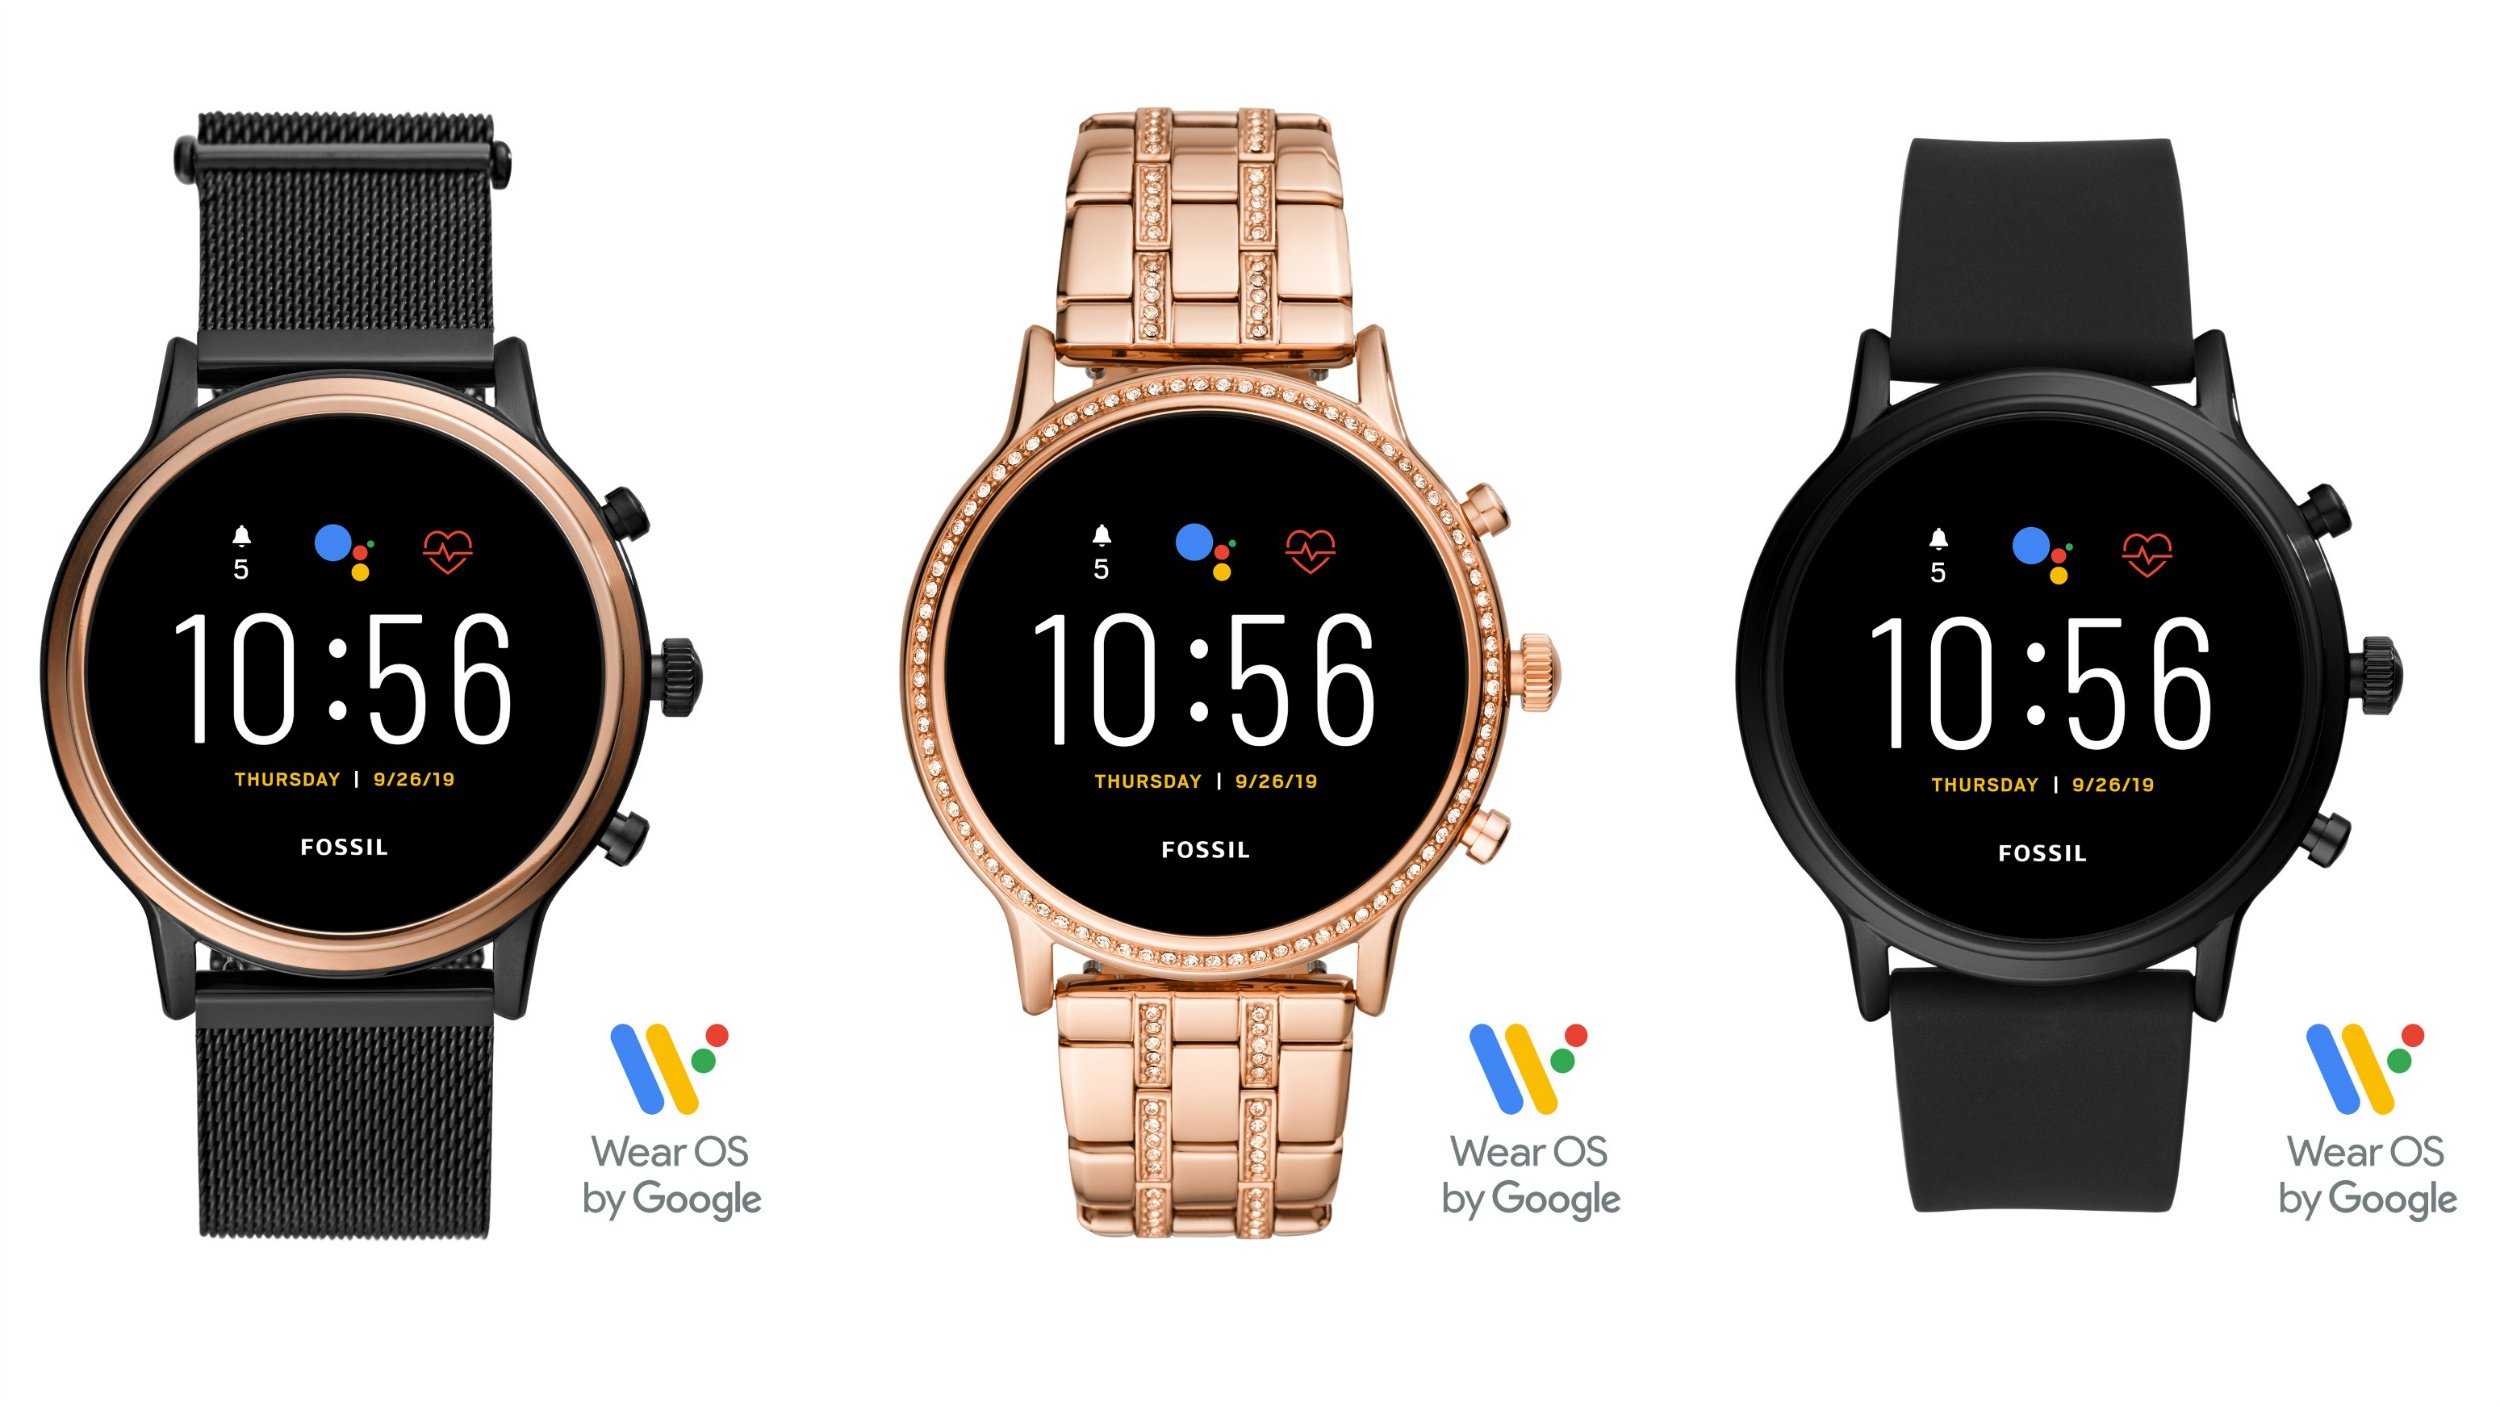 Die drei anderen Varianten der neuen Fossil Q Smartwatches der 5. Generation.